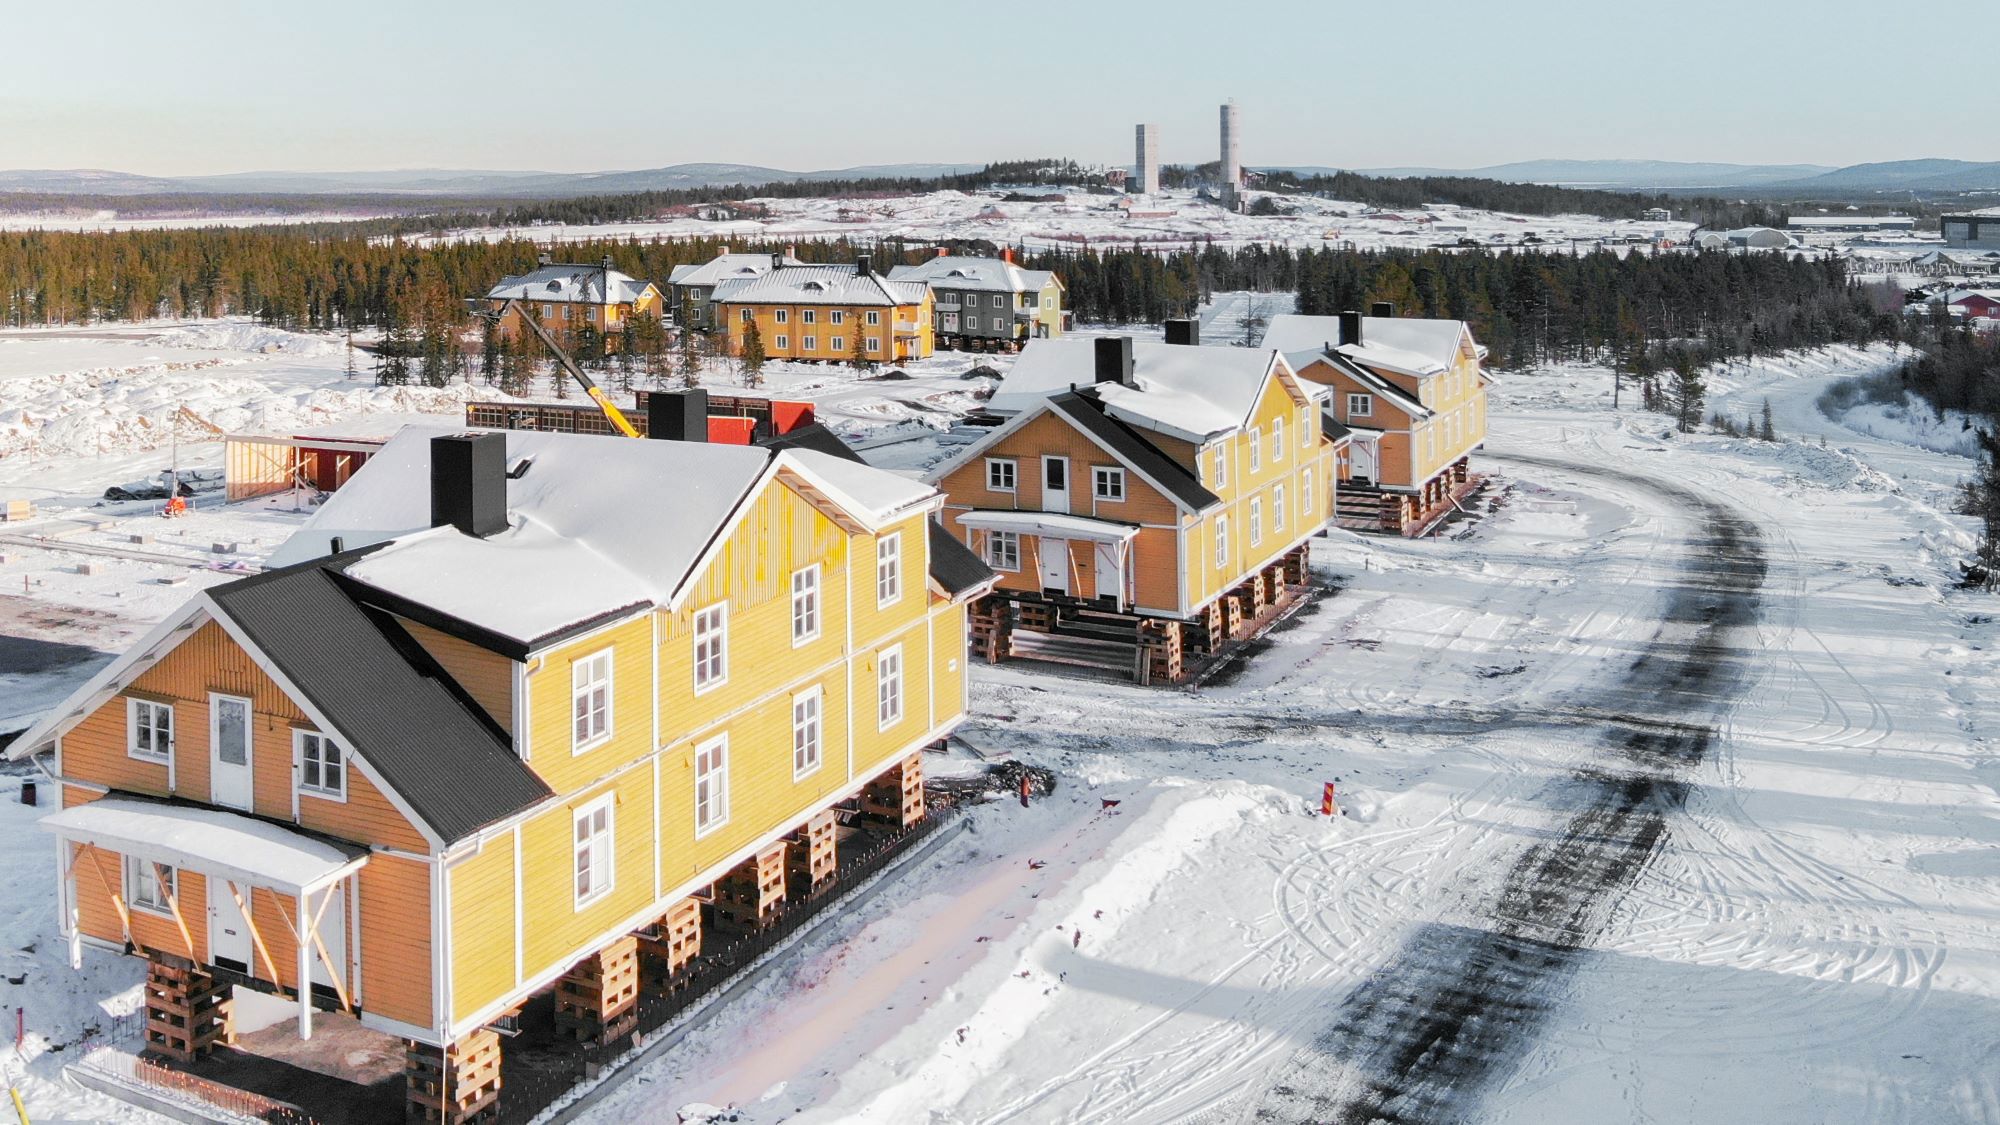 Vi flyttar “Gula raden” i Kiruna. Tre stora gula trähus har lyfts upp på pallar ovanför marken i snöig omgivning. 